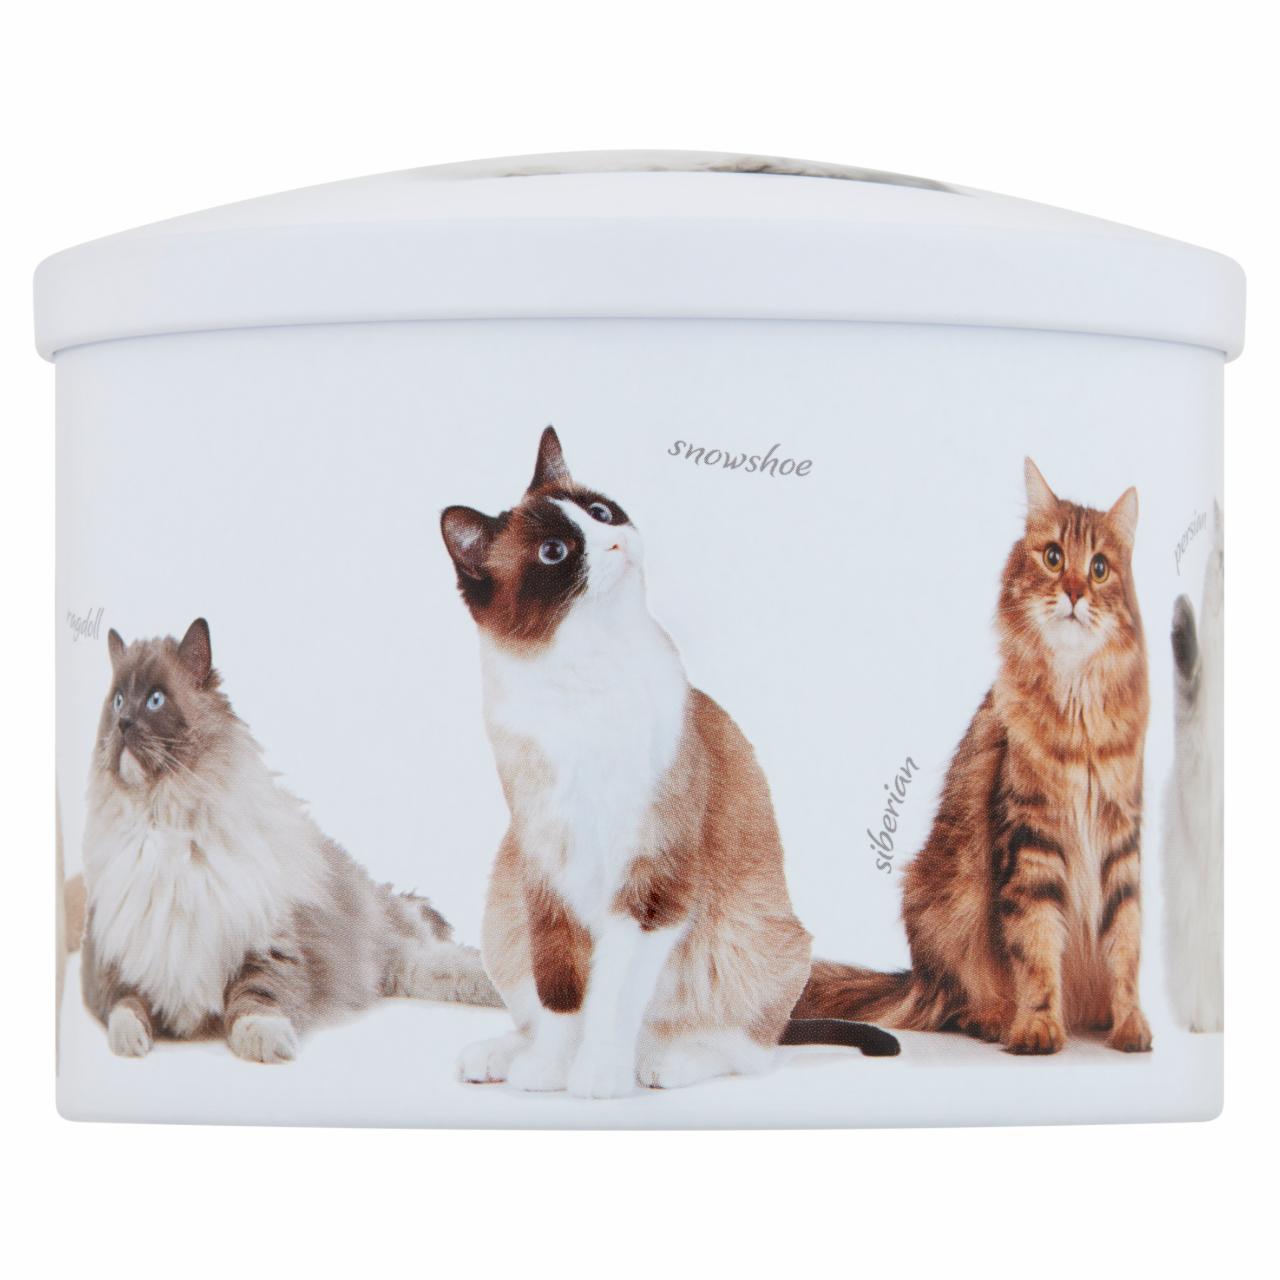 Képek - Gardiners of Scotland vanília ízesítésű puha karamella macskás dobozban 200 g